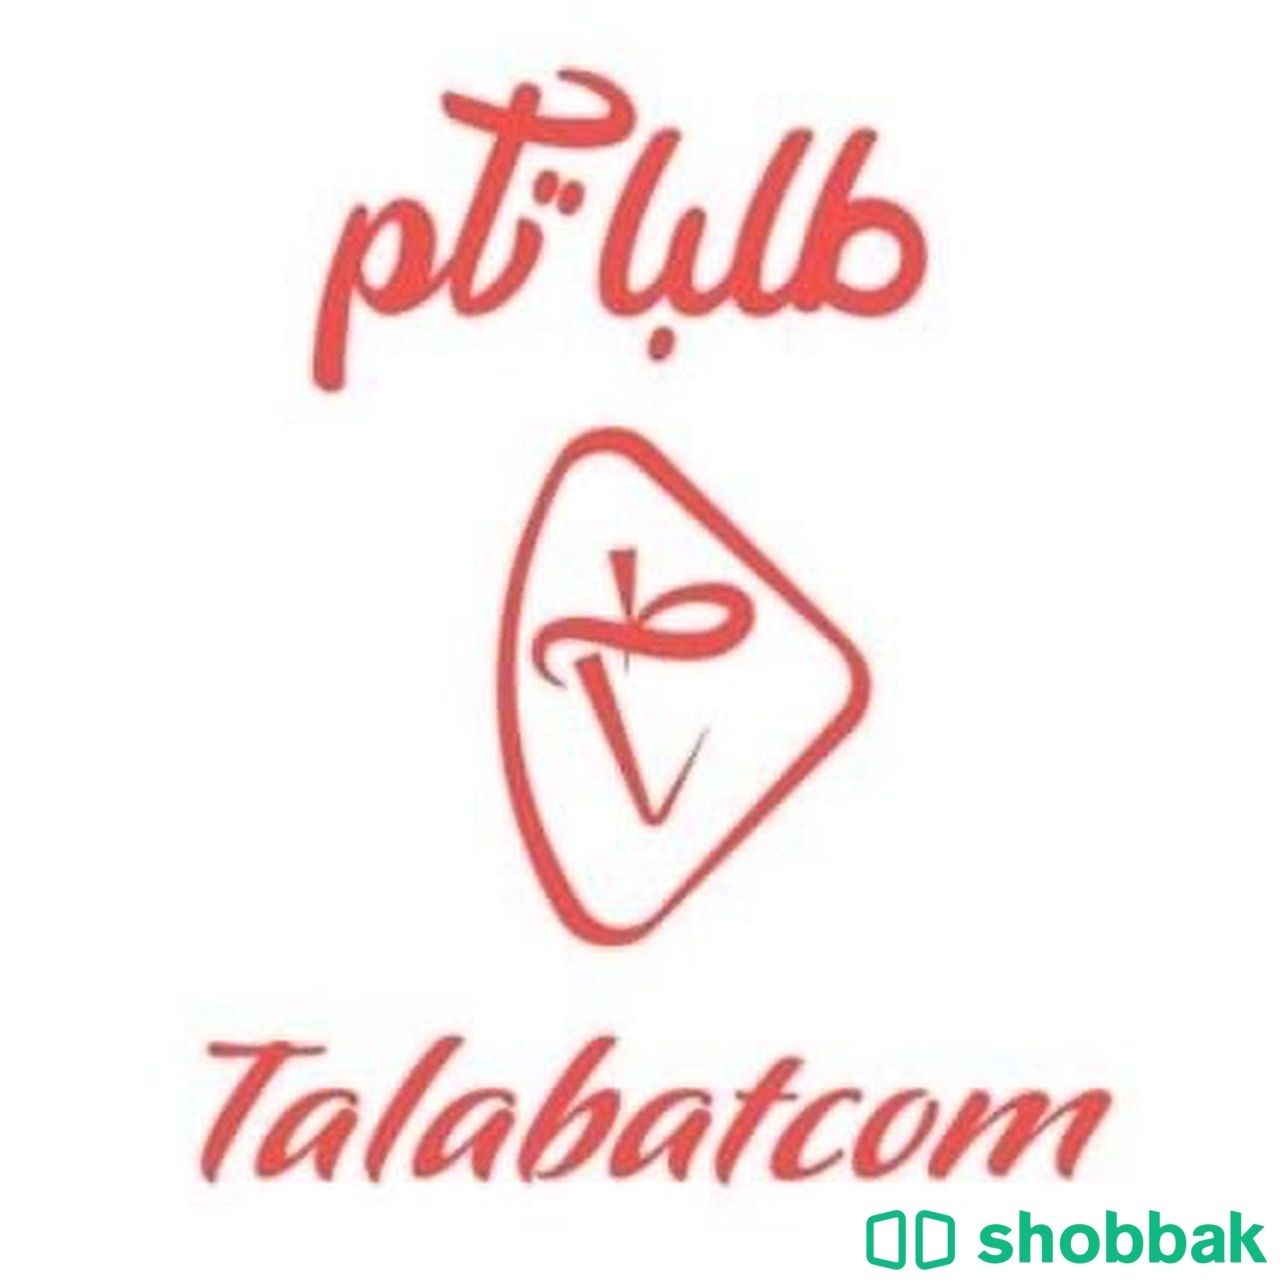 تسجيل بتطبيق طلباتكم للمطاعم Shobbak Saudi Arabia